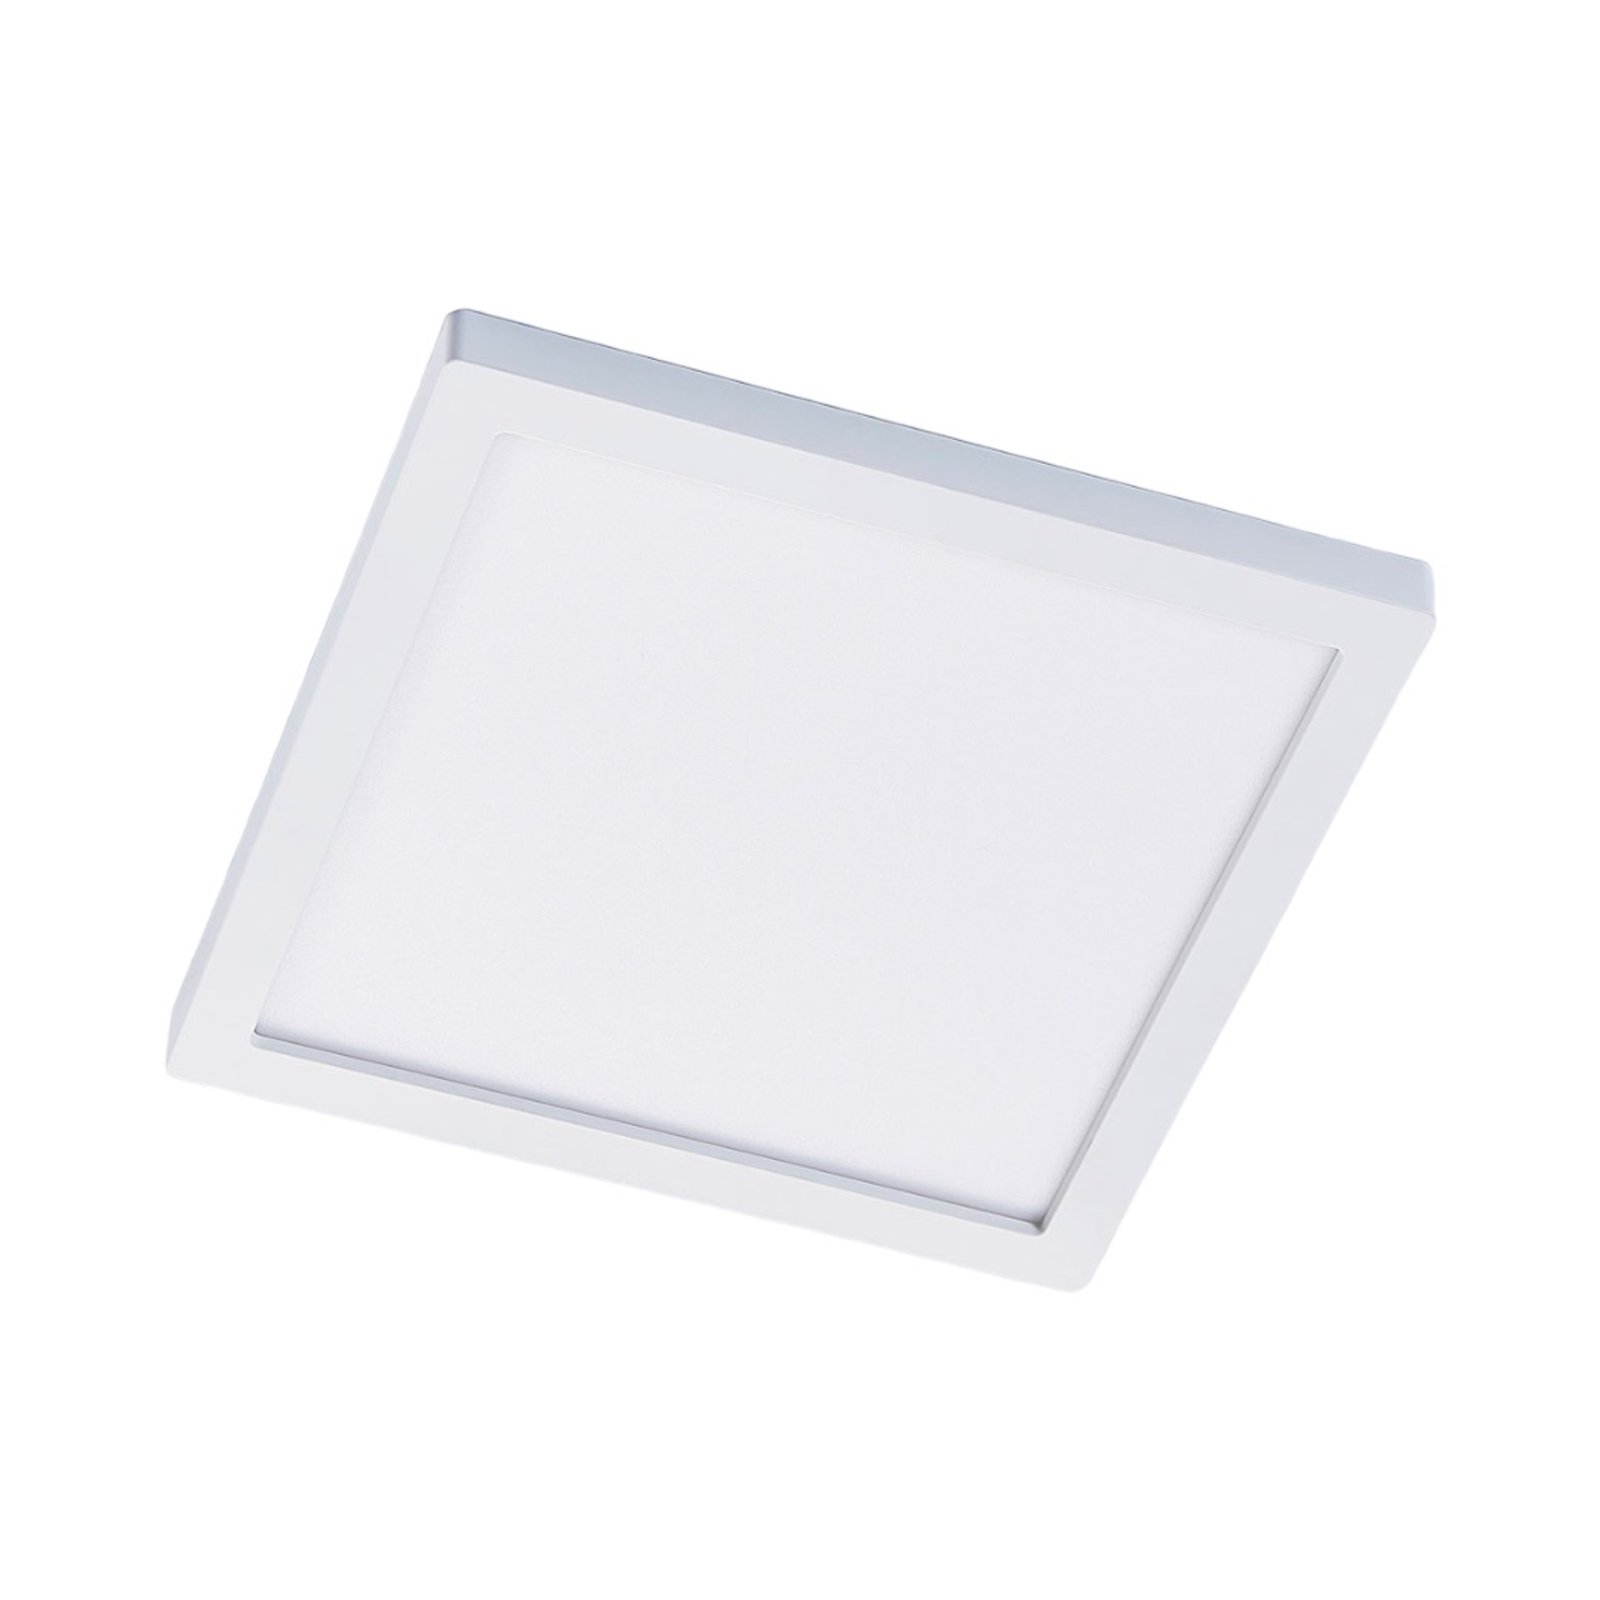 Solvie LED-es mennyezeti lámpa, fehér, szögletes, 30 x 30 cm